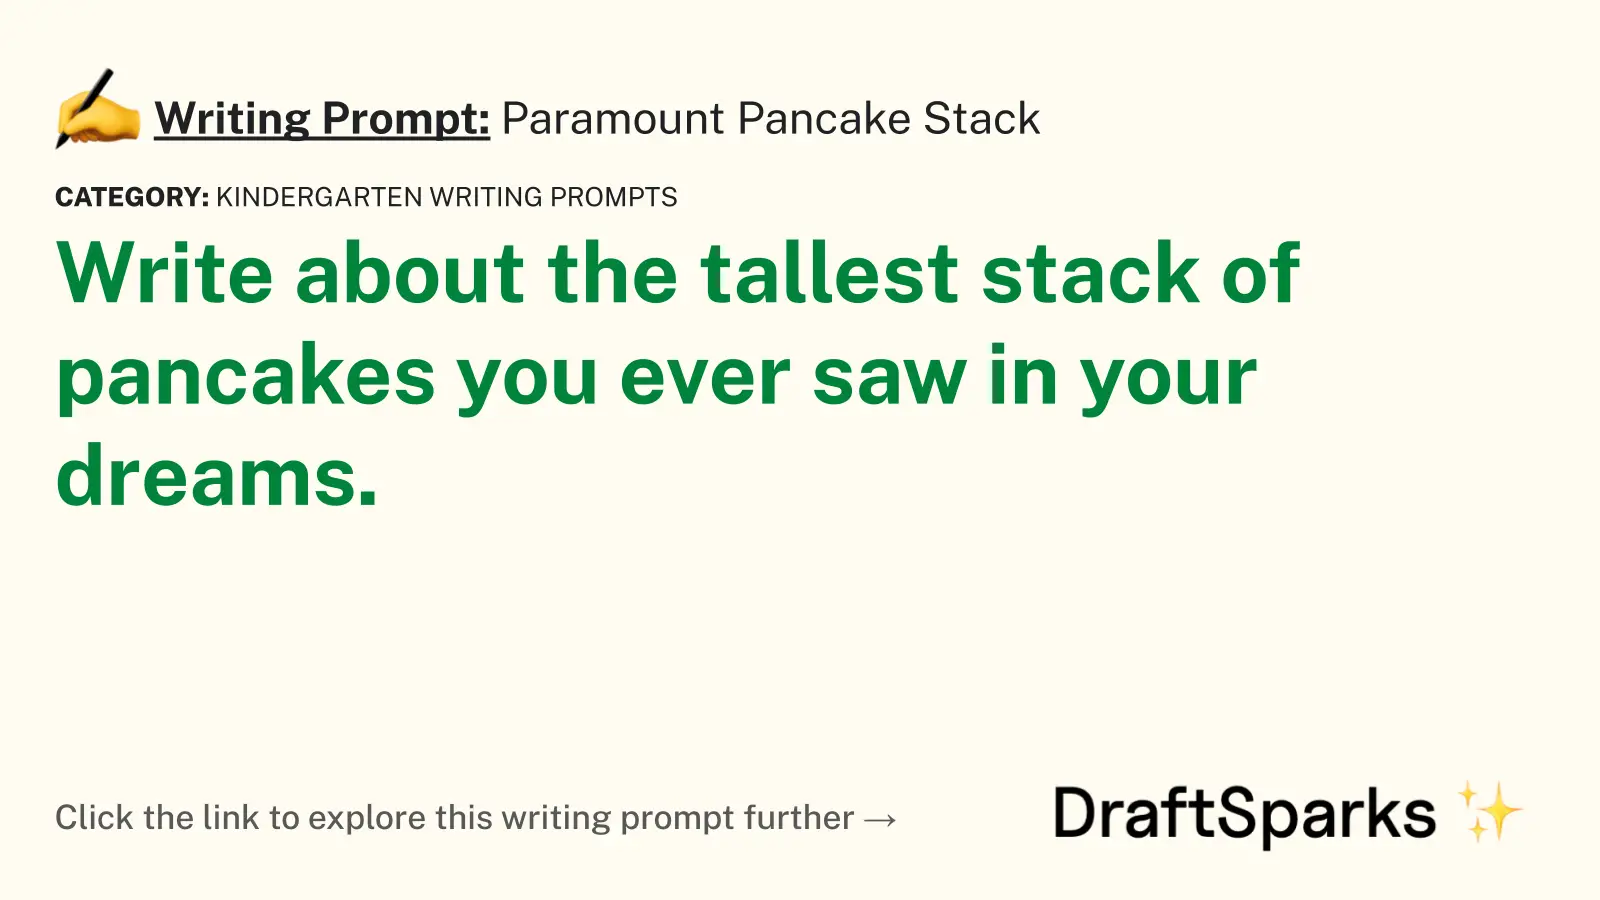 Paramount Pancake Stack